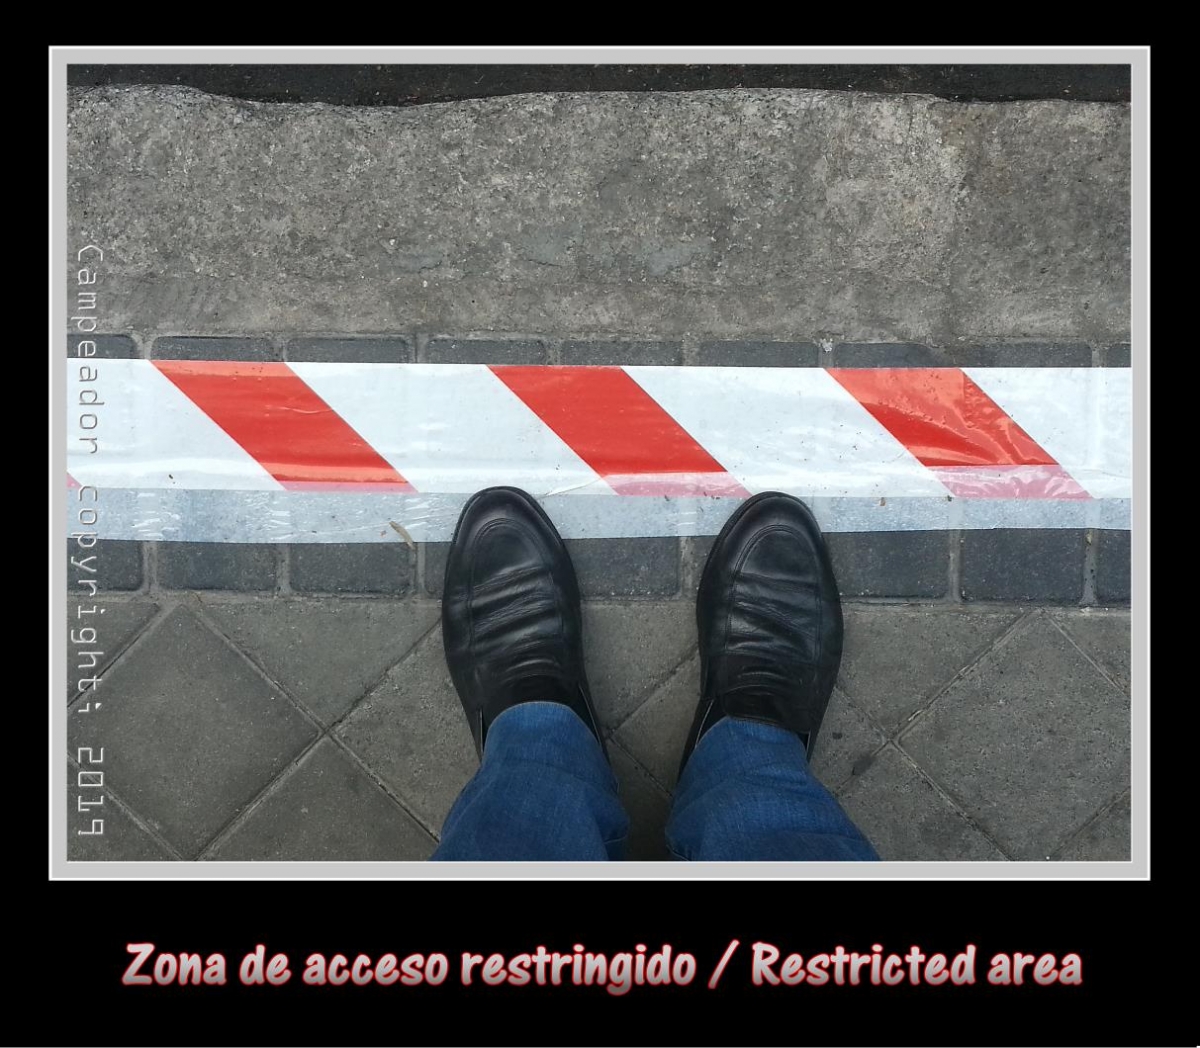 Zona de acceso restringido - Restricted area.  Photography by Campeador.